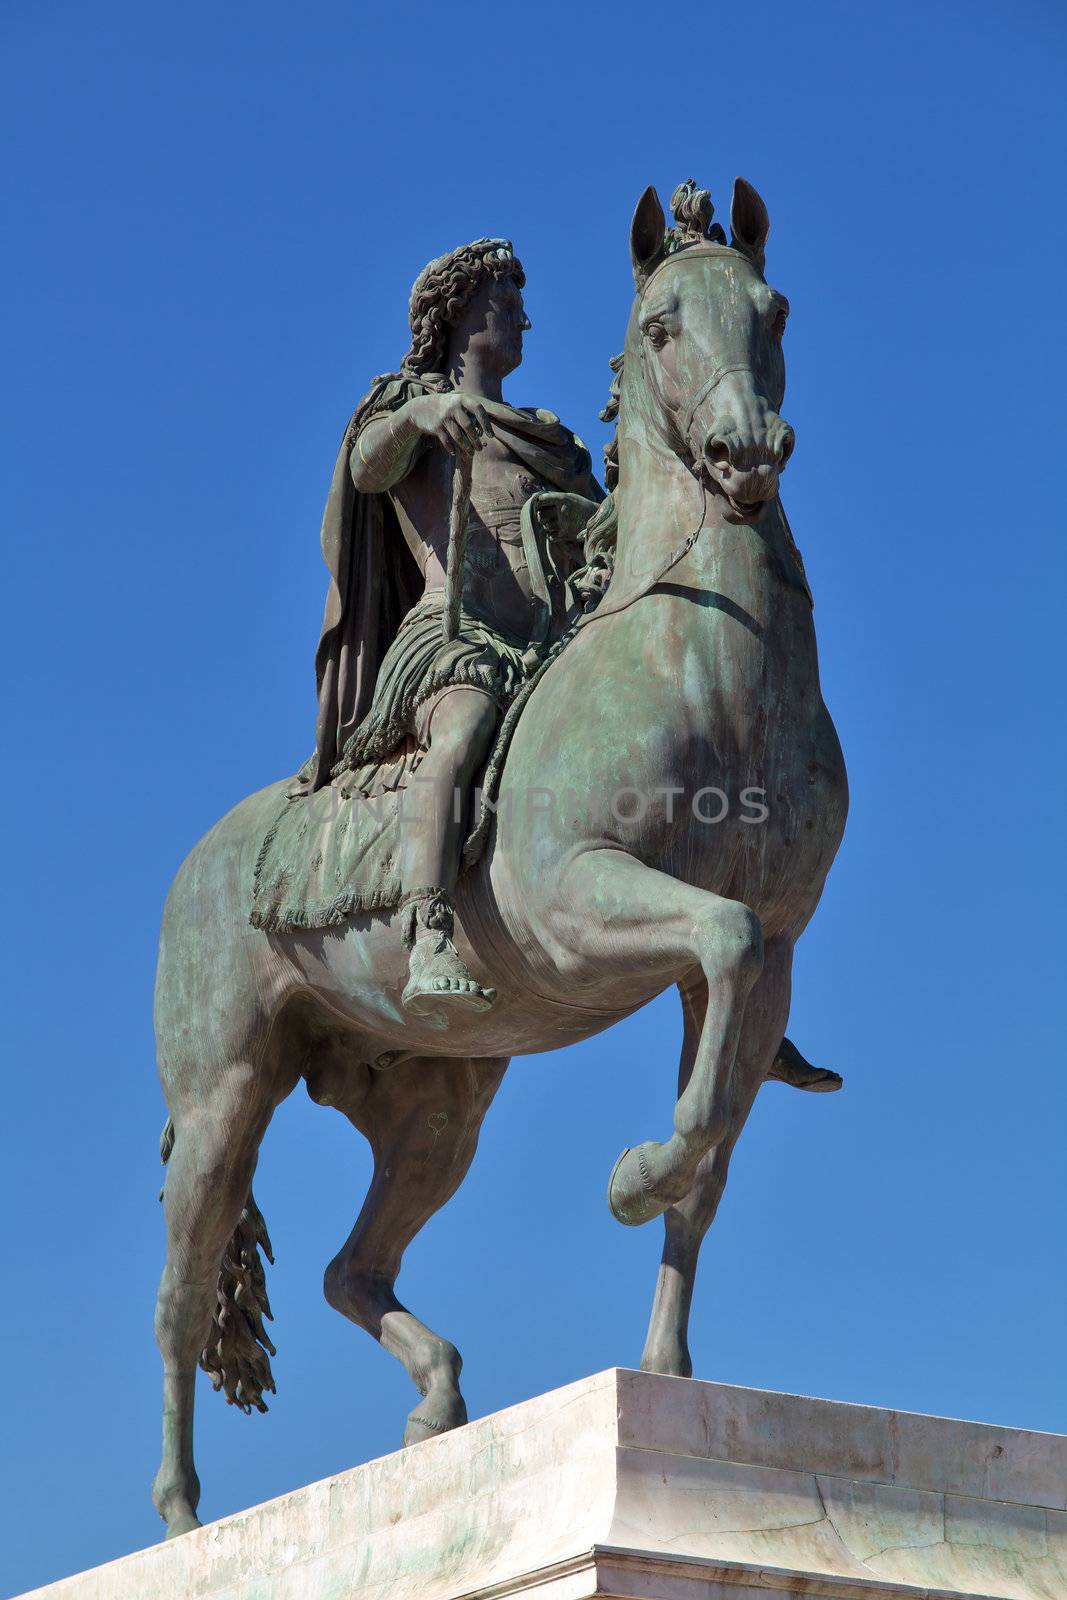 Statue of Louis XIV in Lyon city by chrisroll